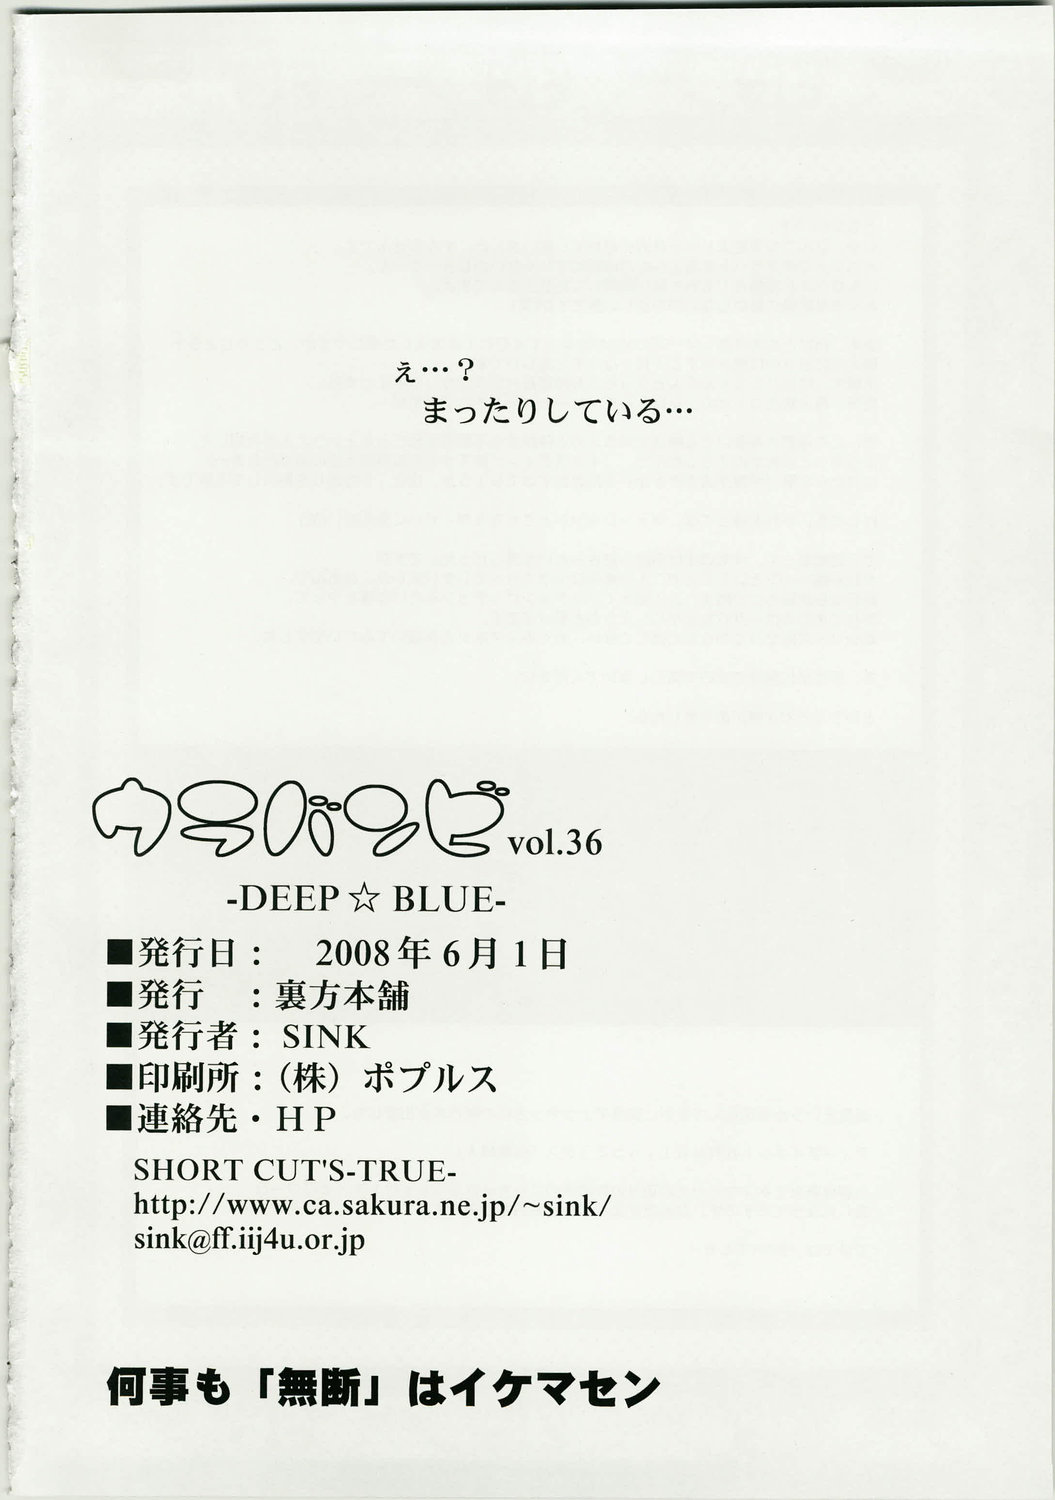 (Puniket 17) [Urakata Honpo (Sink)] Urabambi Vol. 36 - Deep Blue (Yes! Precure 5) page 24 full